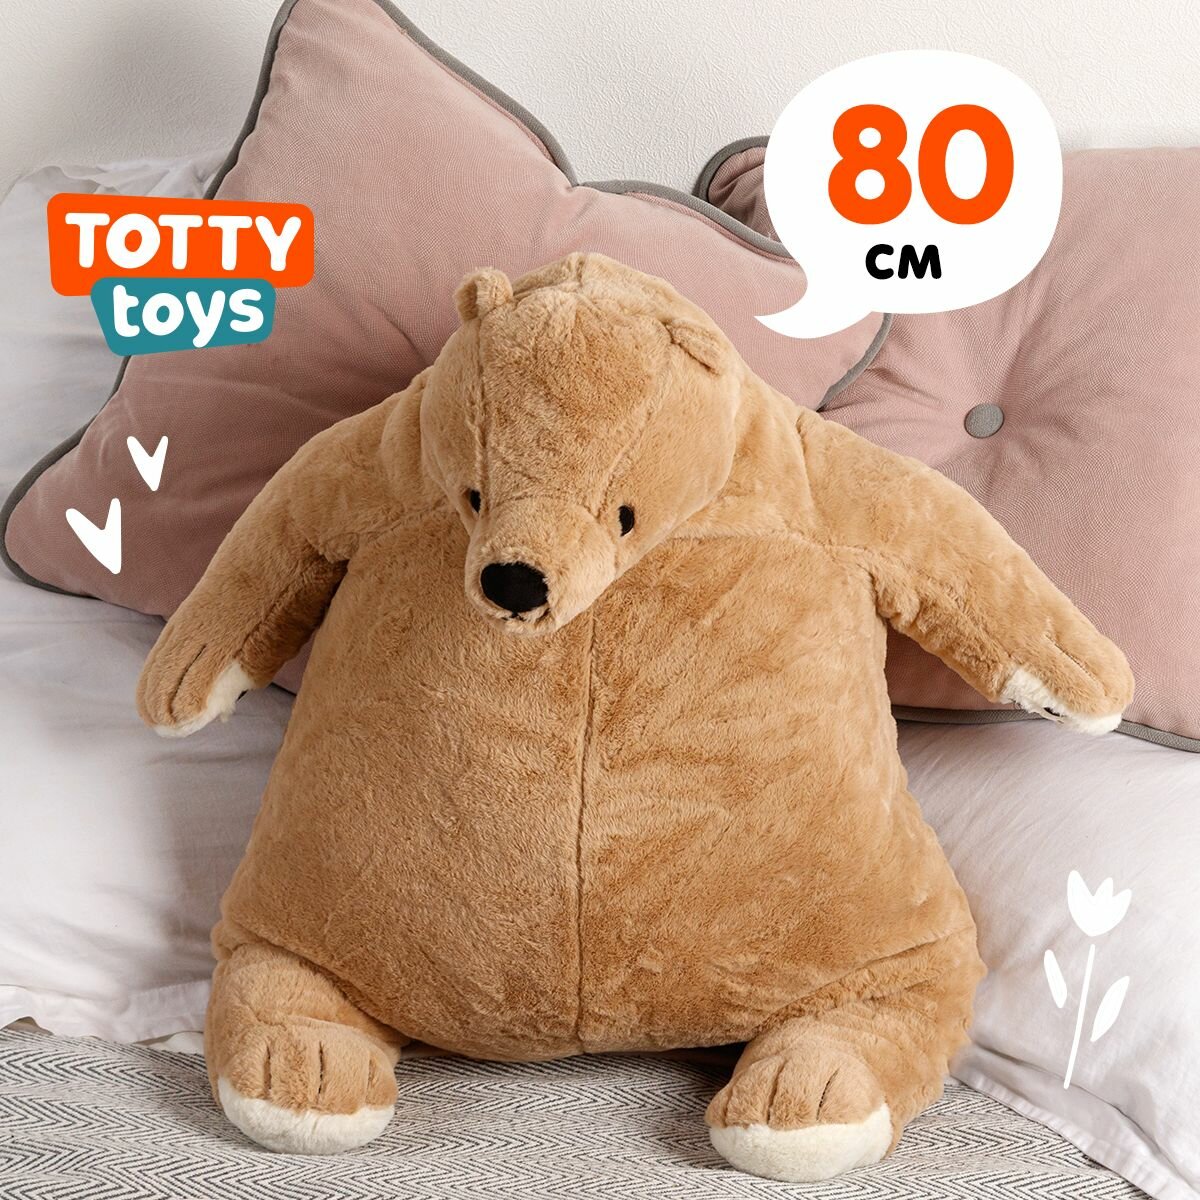 Мягкая игрушка Totty toys медведь икеа, бежевый, 80 см